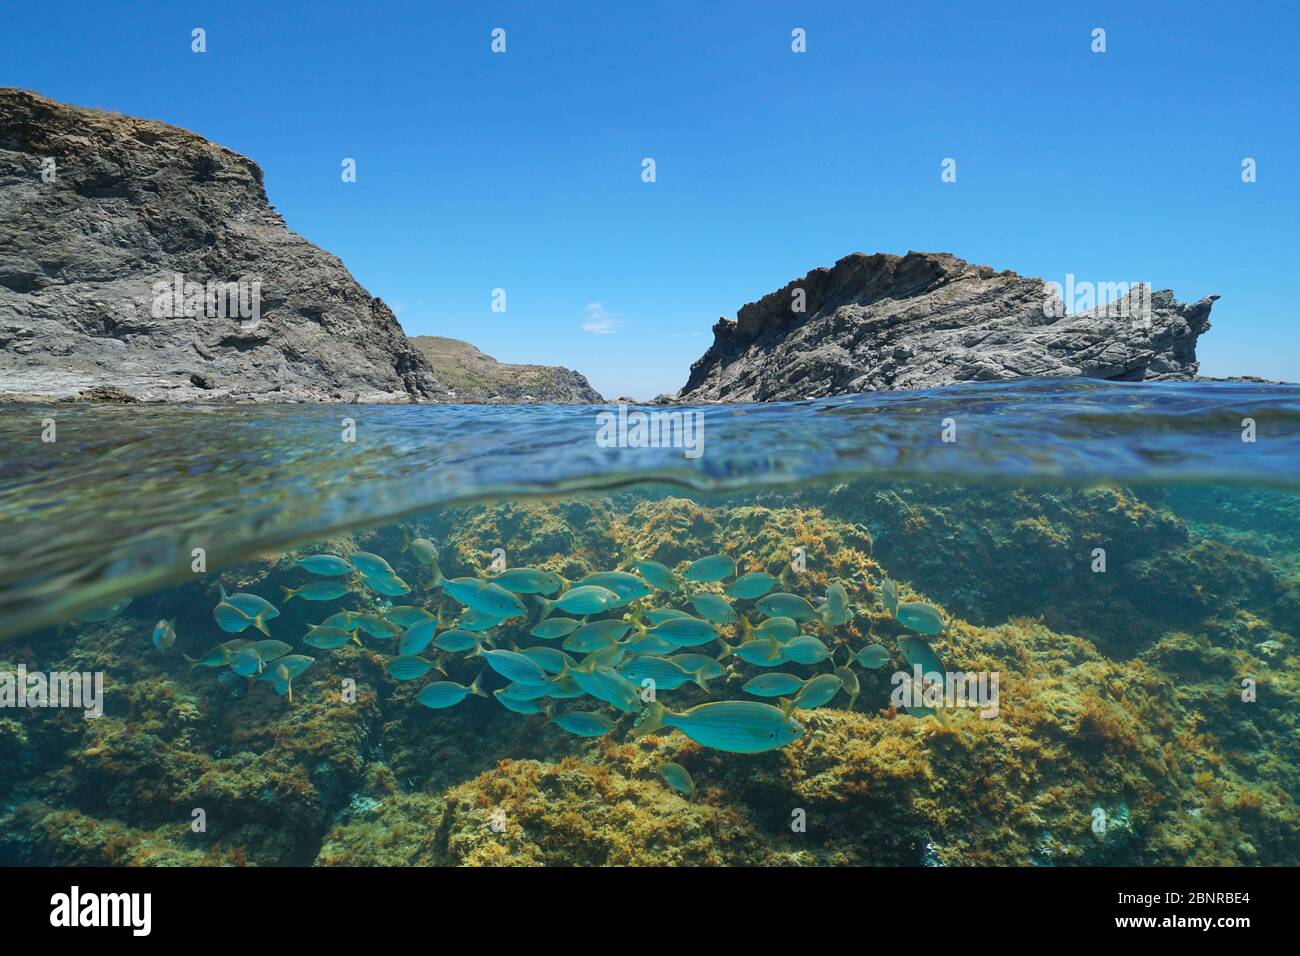 Mer Méditerranée côte rocheuse avec un îlot et un groupe de poissons sous-marins, Espagne, Costa Brava, Colera, Catalogne, vue partagée sur sous l'eau Banque D'Images